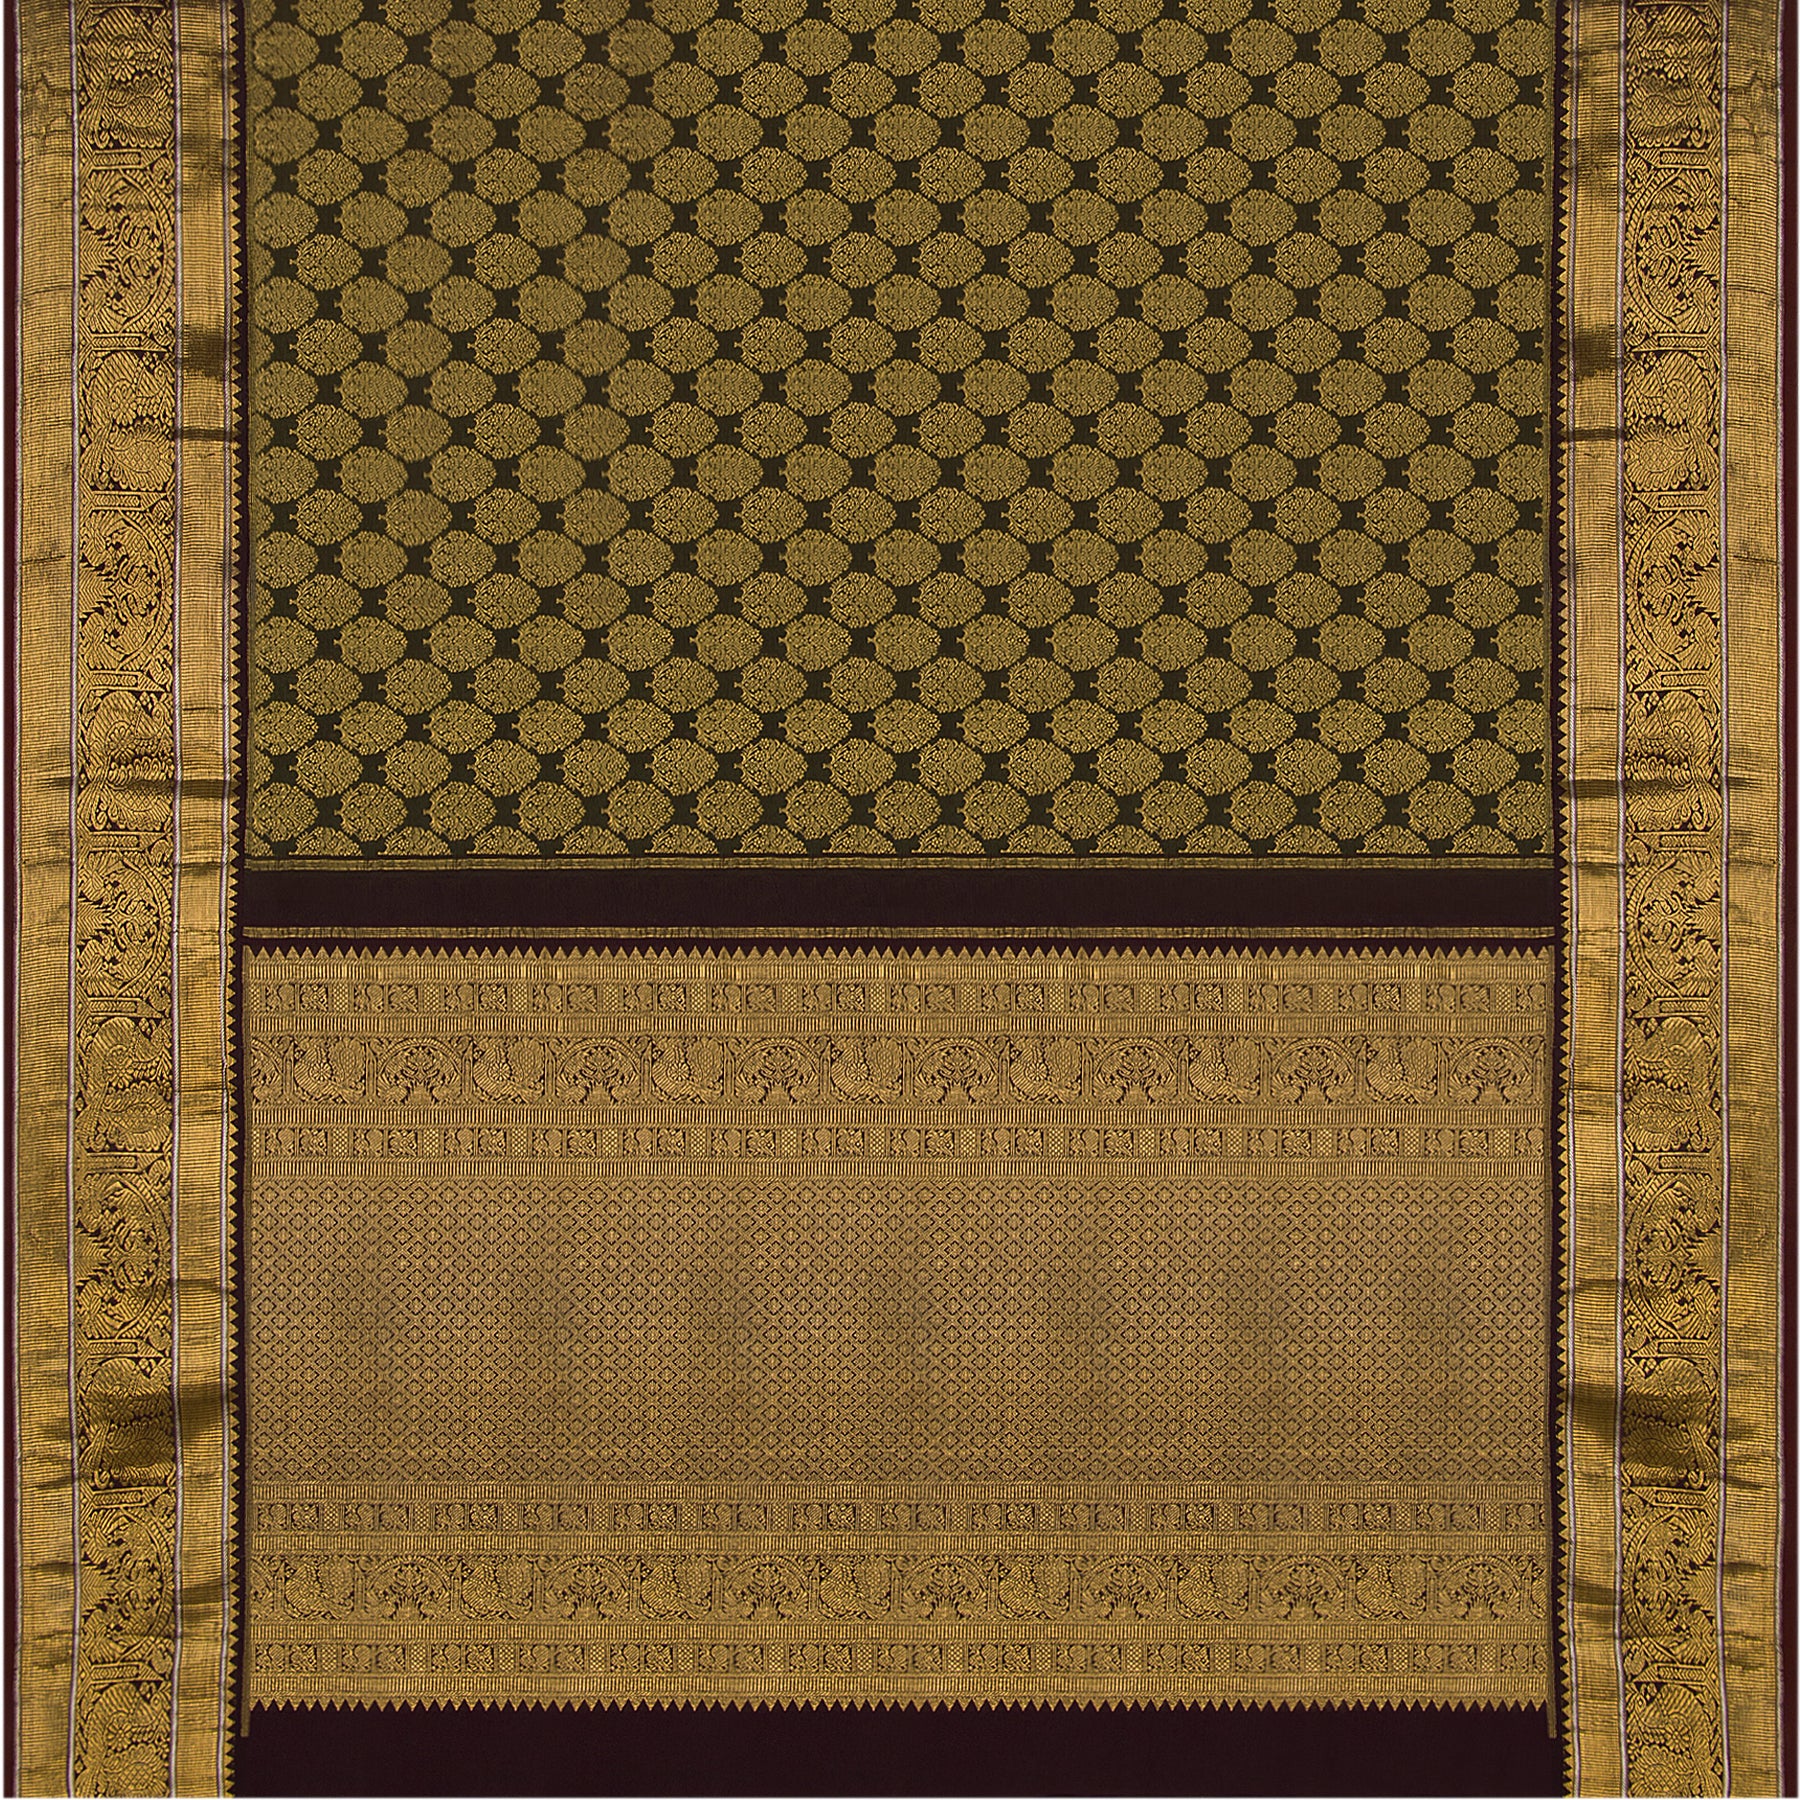 Kanakavalli Kanjivaram Silk Sari 18-100-HS001-00122 - Full View